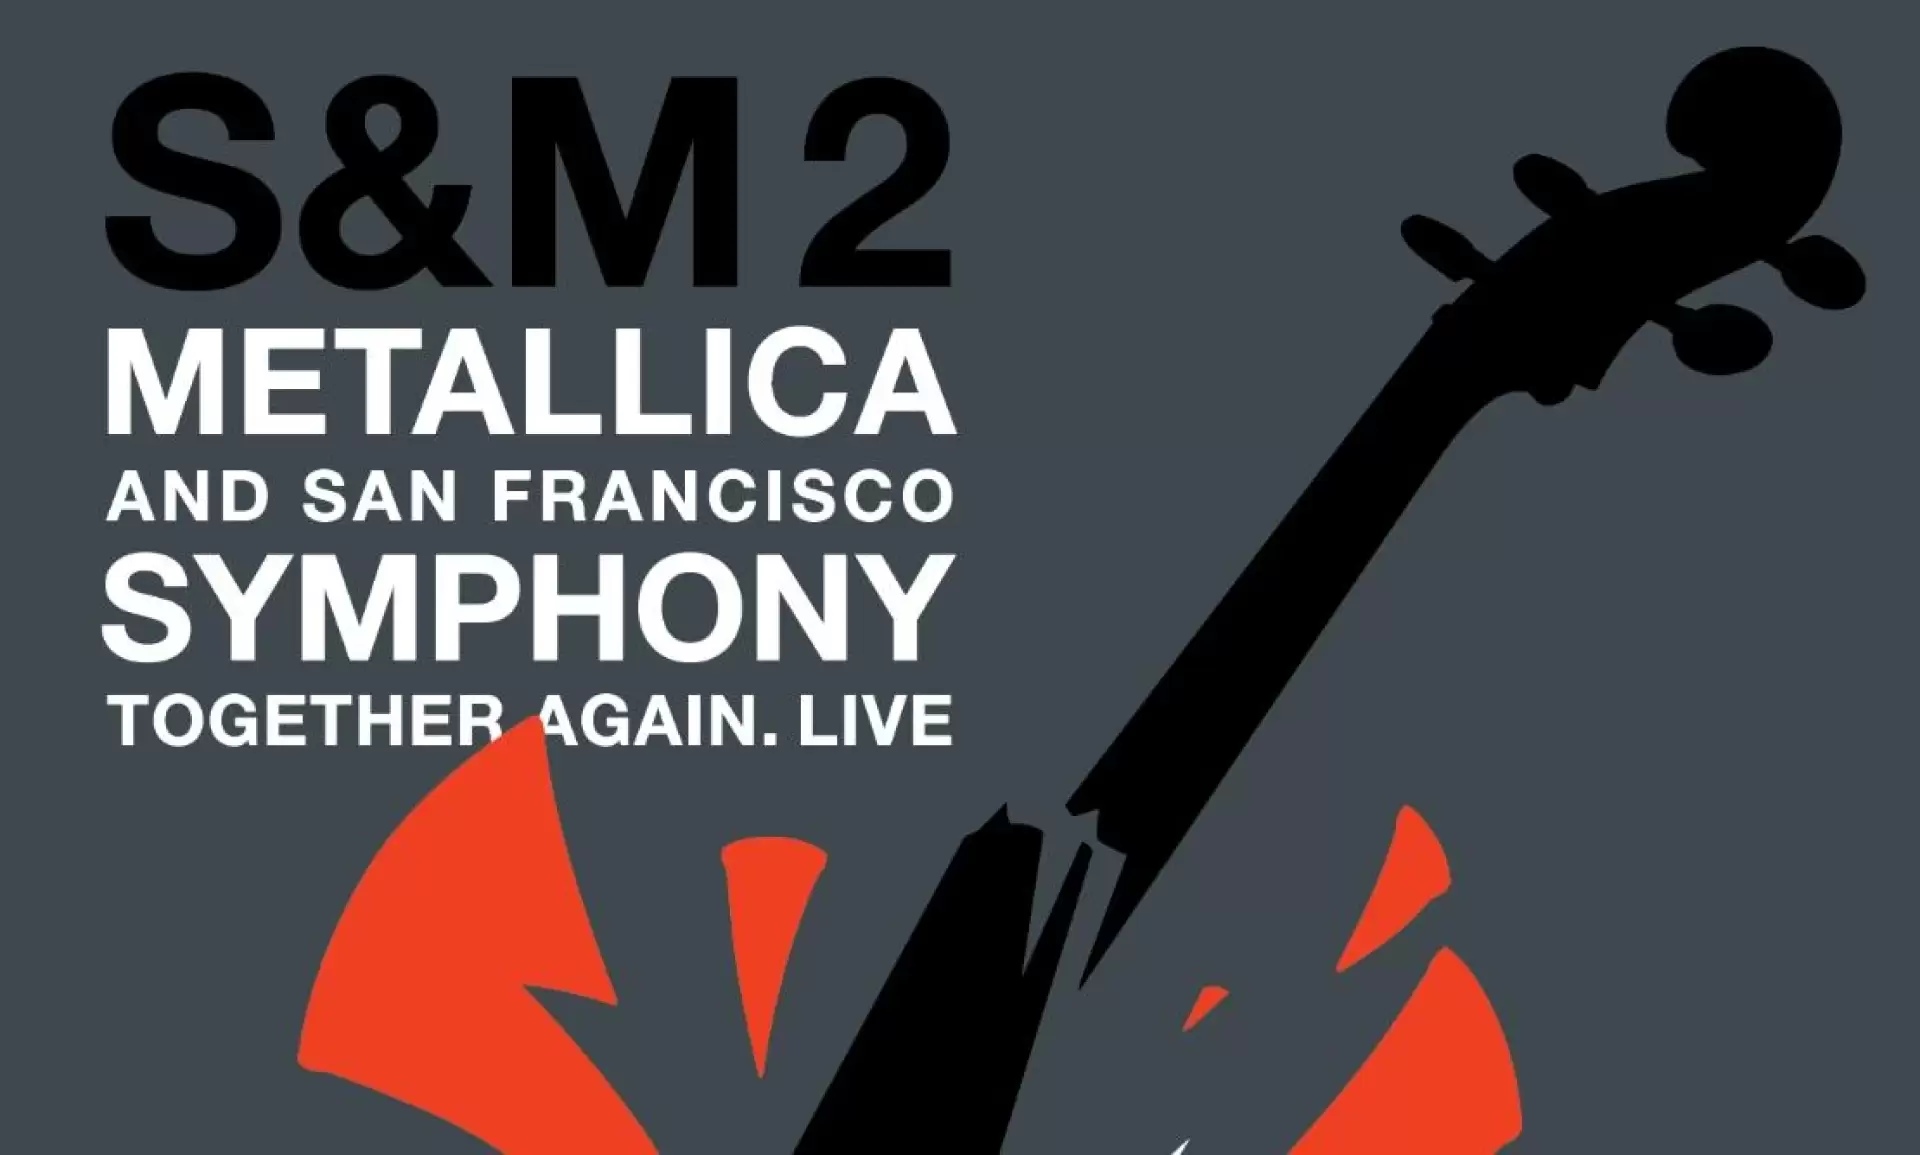 دانلود کنسرت Metallica & San Francisco Symphony Present S&M2: 20th Anniversary Concert 2019 (سمفونی سانفرانسیسکو و متالیکا تقدیم می کند: کنسرت بیستمین سالگرد) با تماشای آنلاین